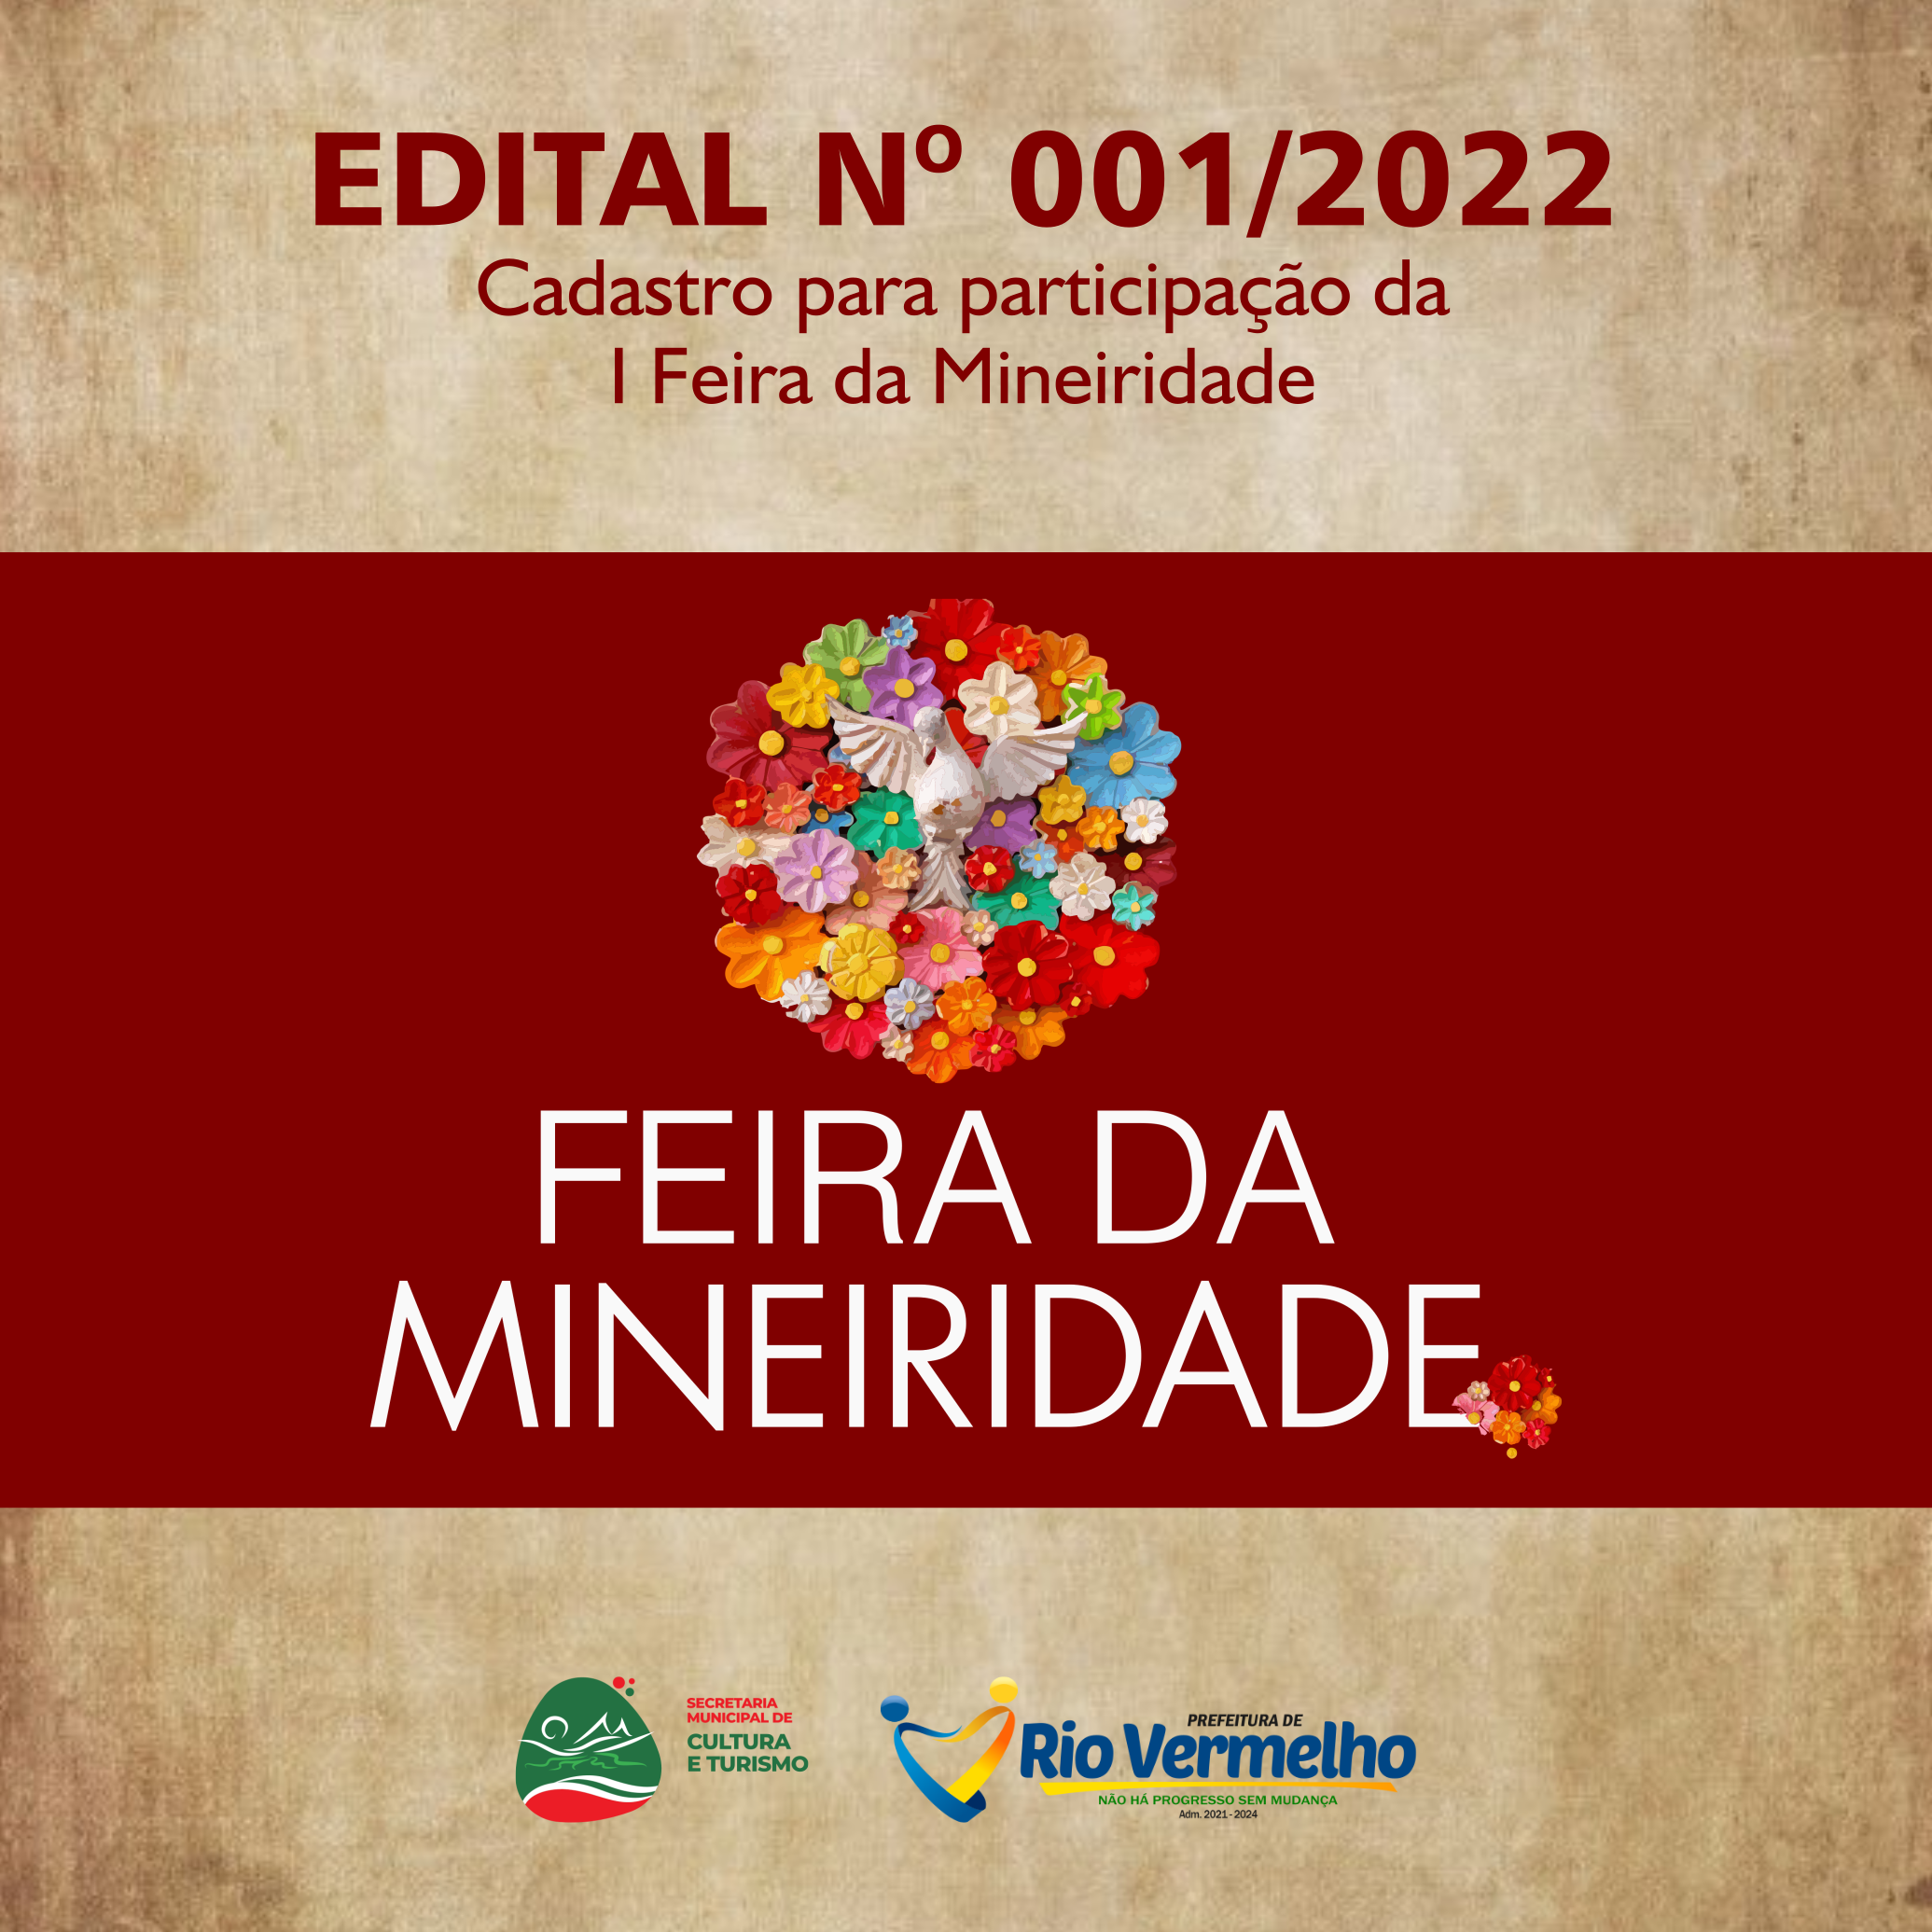 No momento você está vendo EDITAL DE CHAMAMENTO PÚBLICO Nº 001/2022 – Cadastro para participação da I Feira da Mineiridade